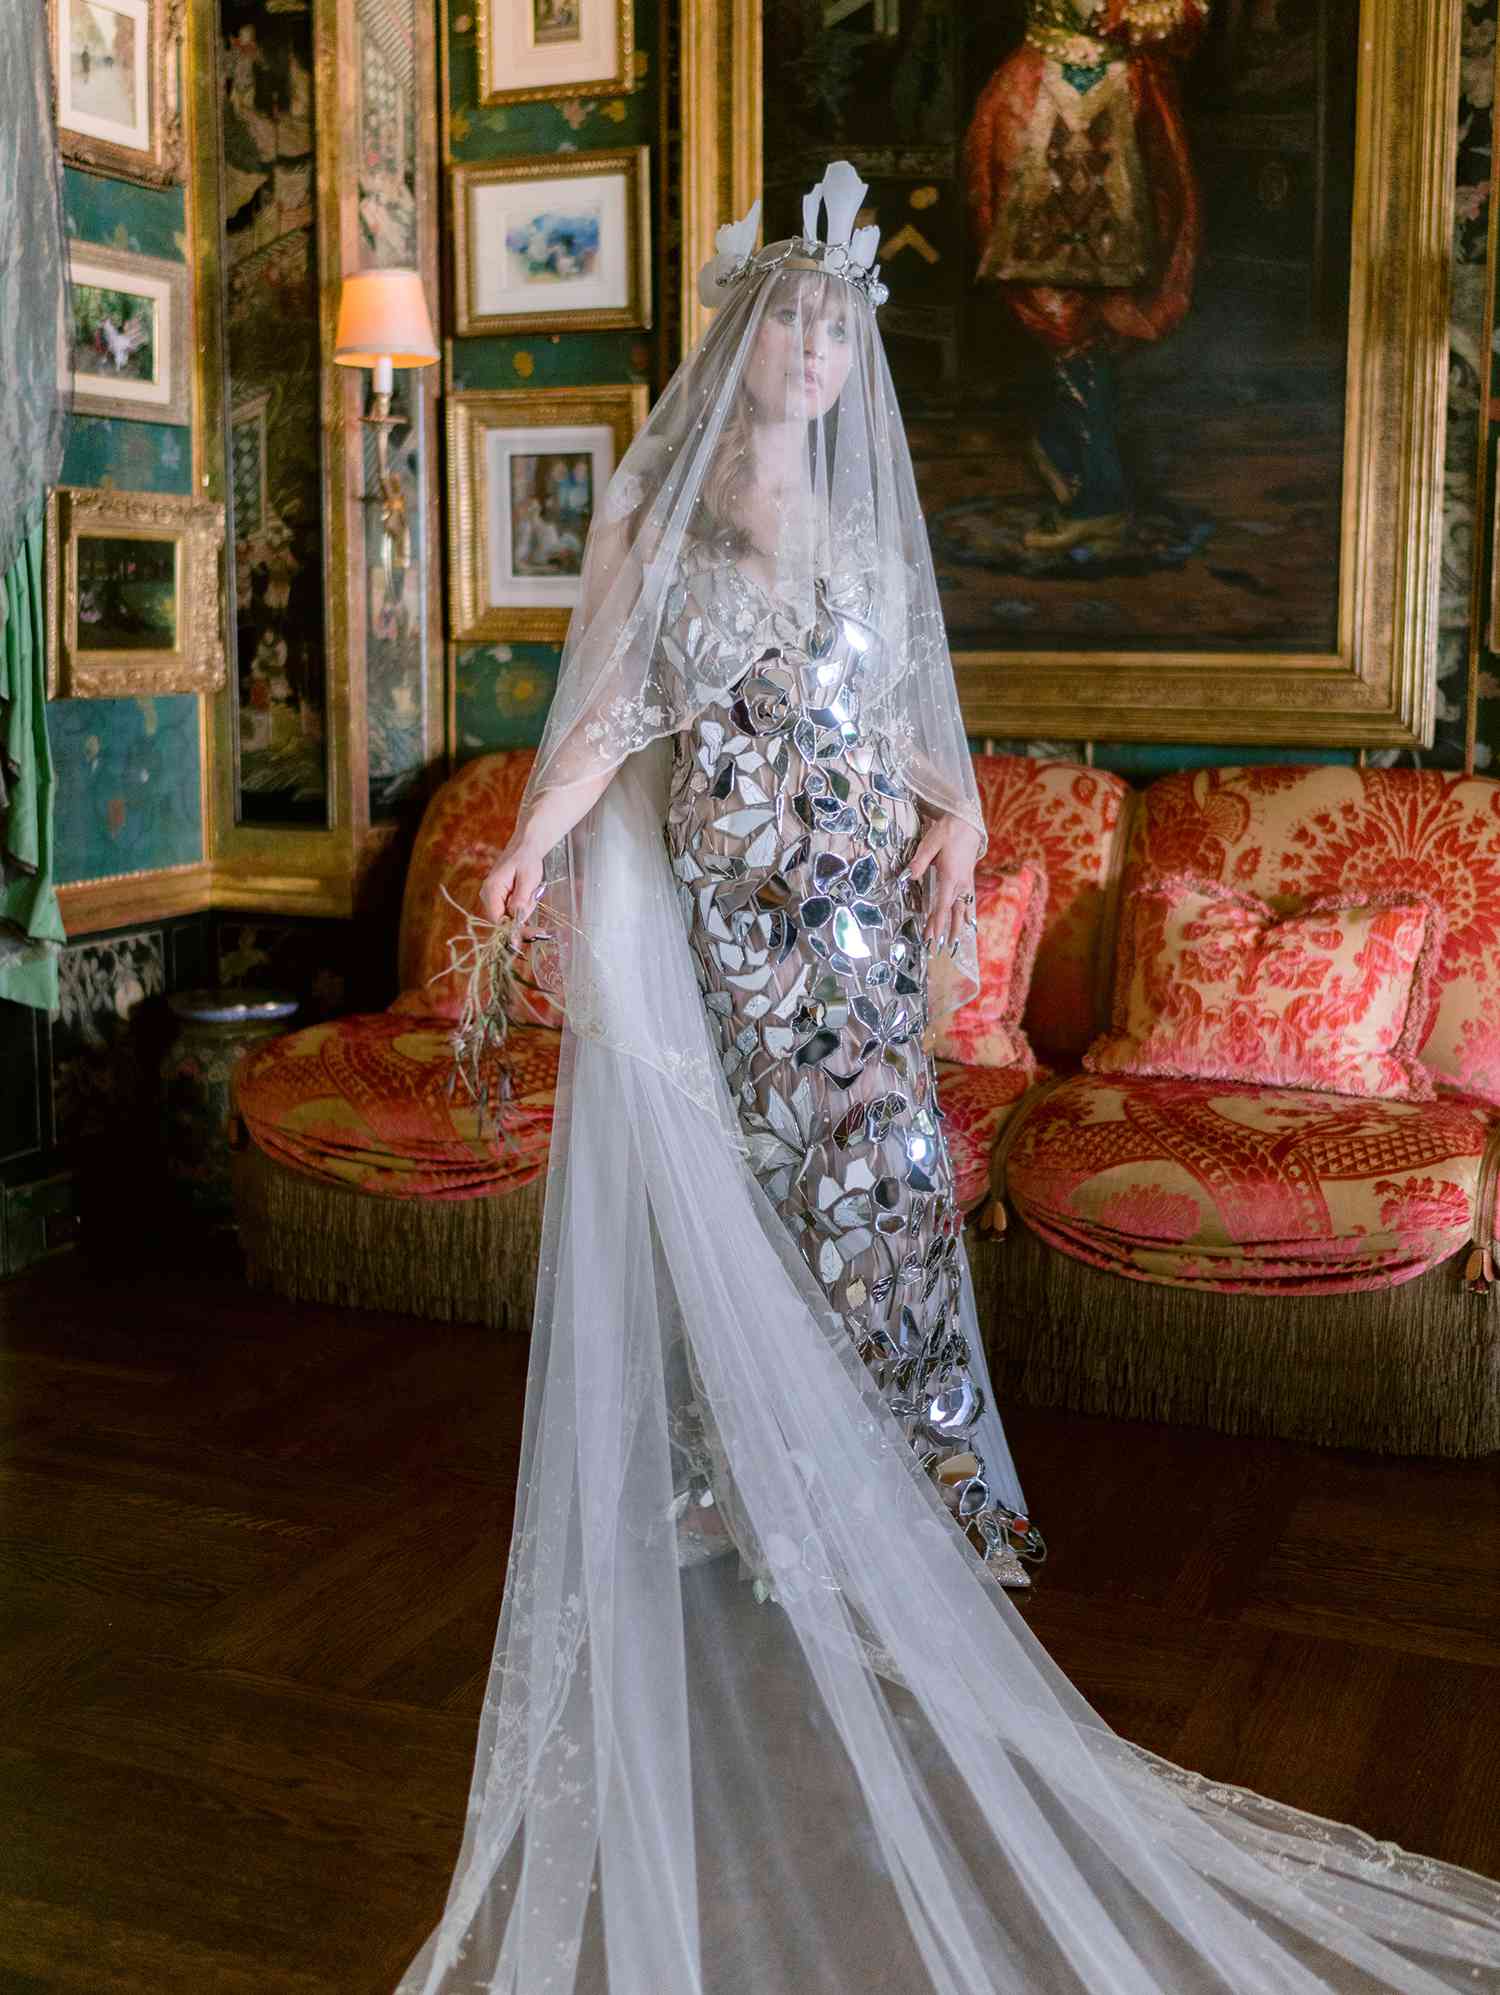 La heredera Ivy Getty se casa con un vestido de alta costura con cristales rotos 'increíblemente personal'